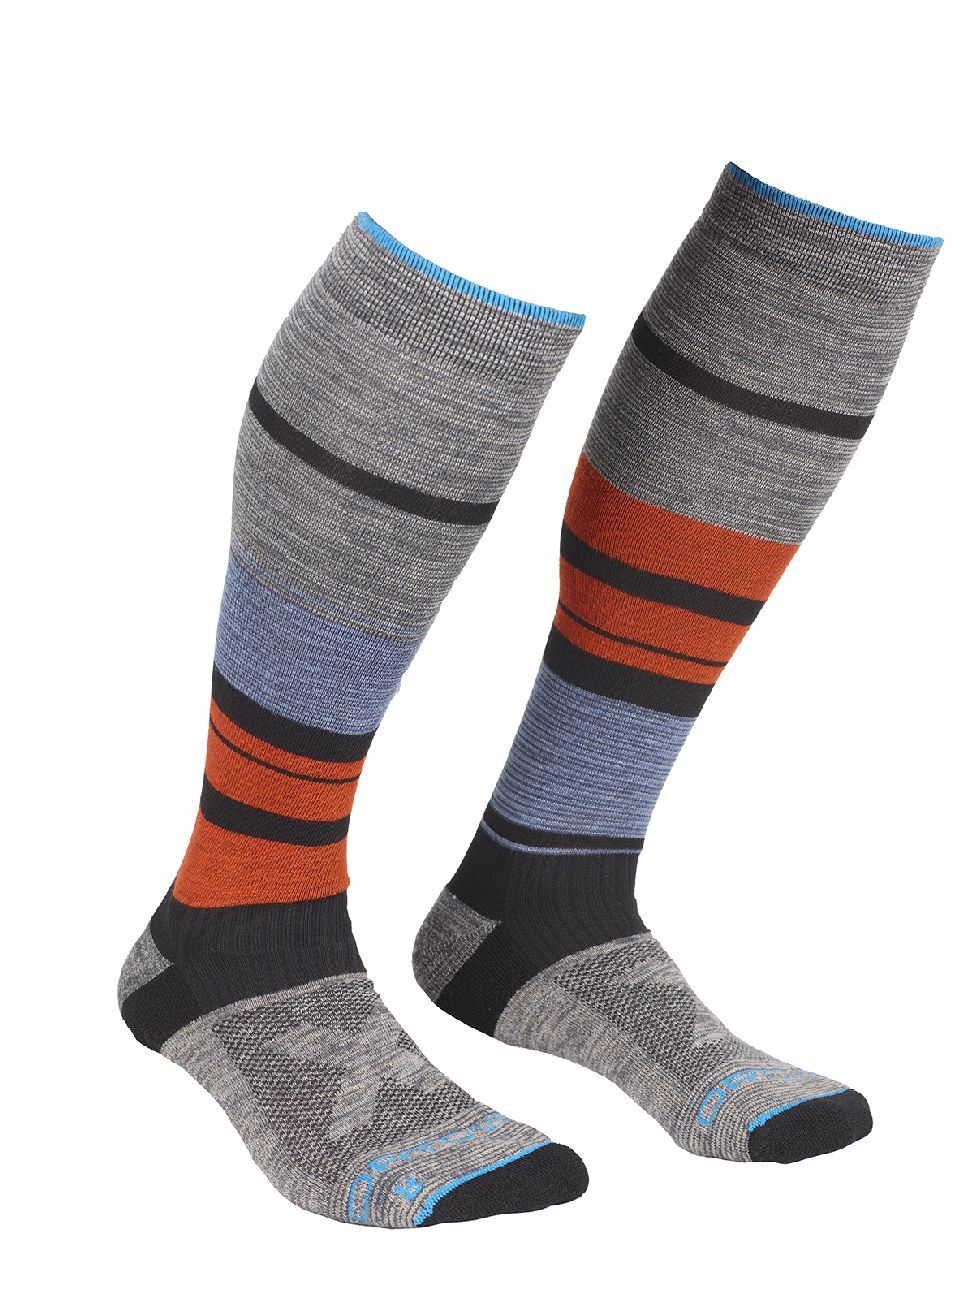 Ortovox All Mountain Long Socks Warm - Skisokken - Heren